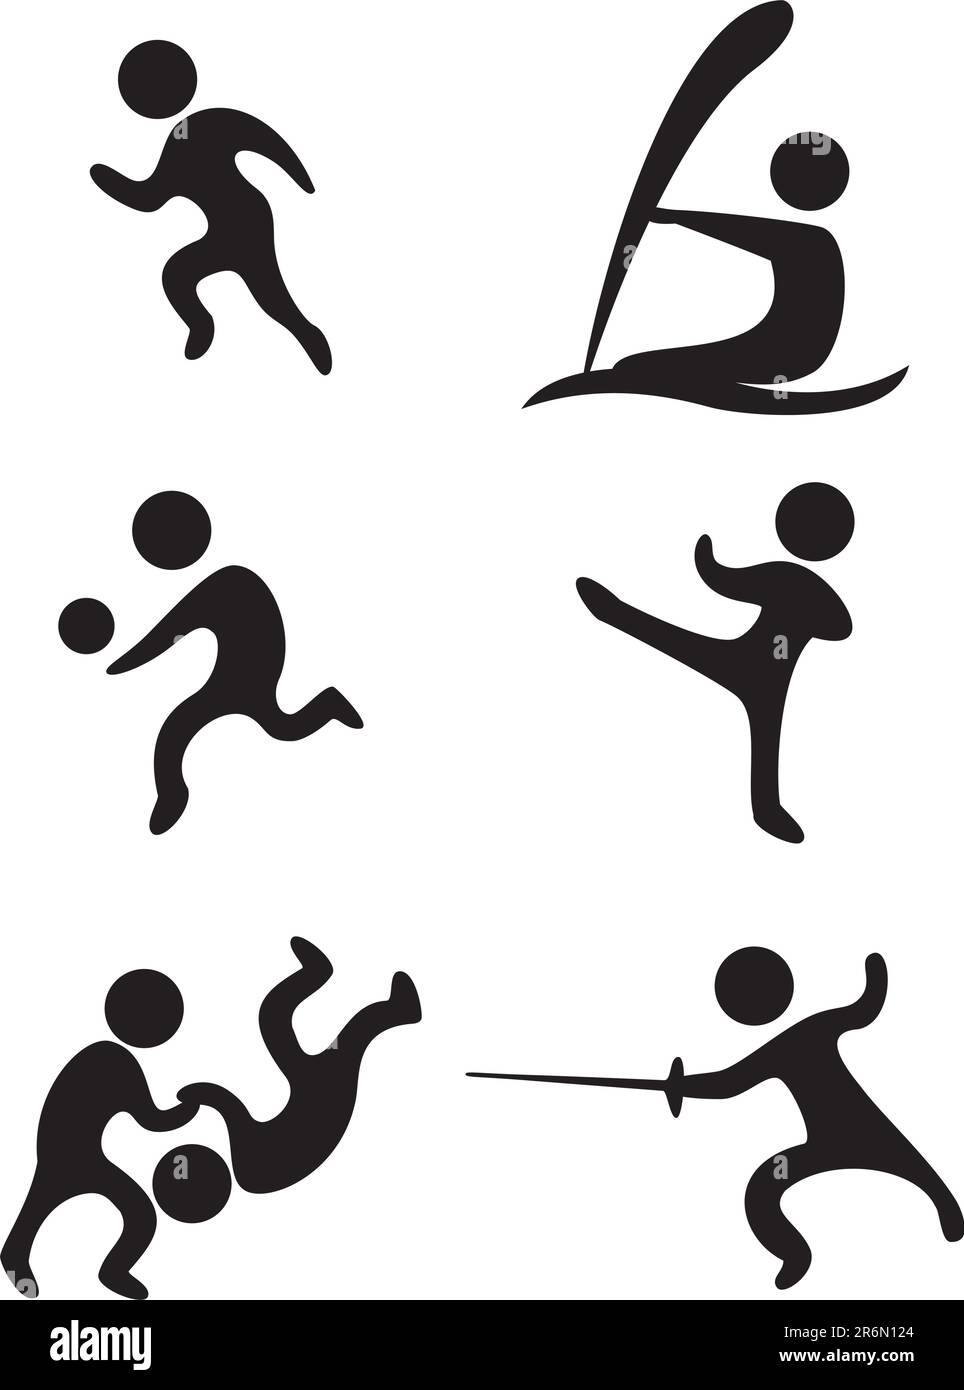 vektorsportsymbole: Feld- und Track-Volleyball Karate-Ringen, Schwertkampf und Segeln Stock Vektor